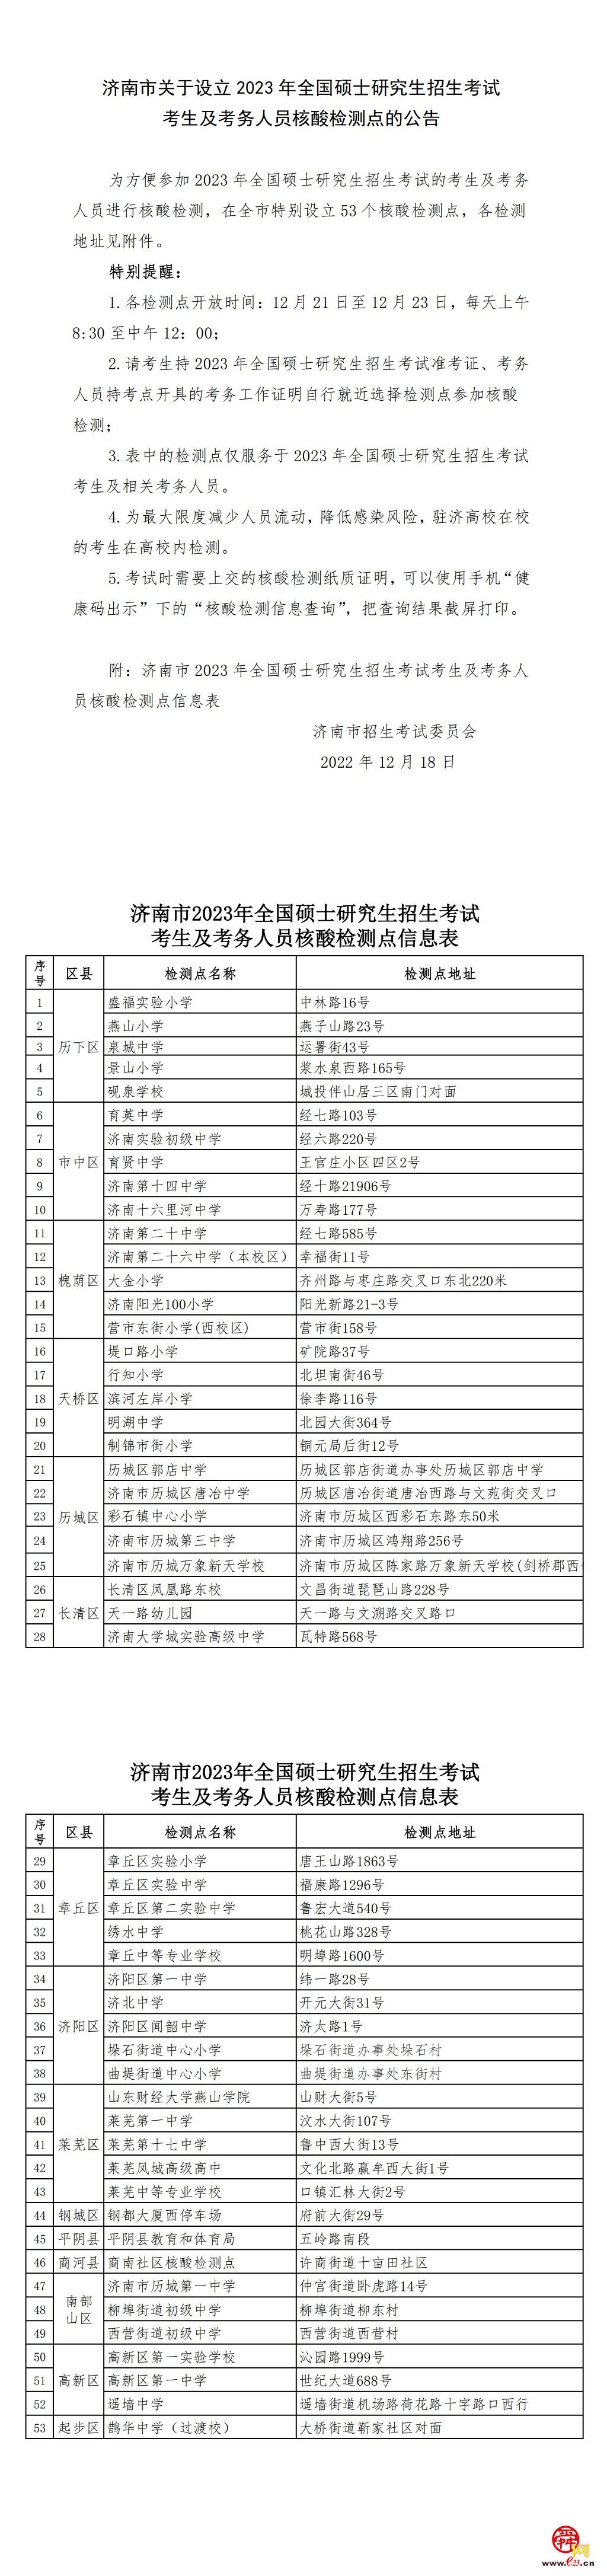 济南市关于设立2023年全国硕士研究生招生考试核酸检测点的公告